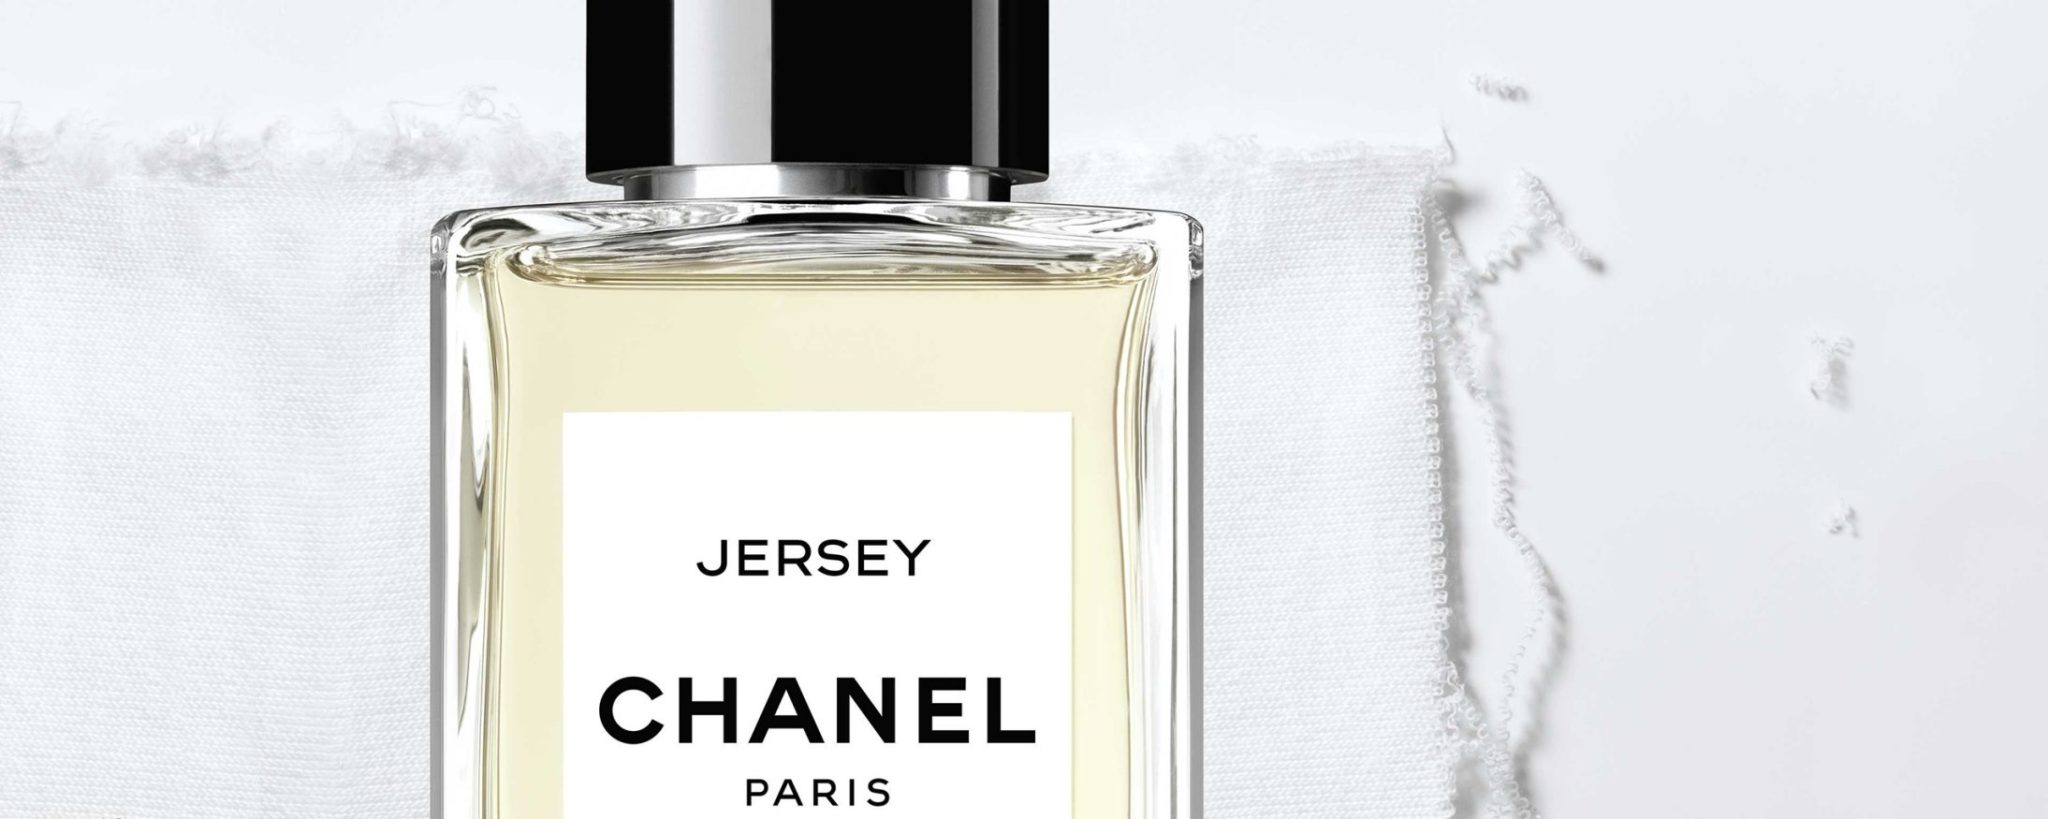 Chanel Les Exclusifs Jersey eau de parfum Esprit de Gabrielle espritdegabrielle.com